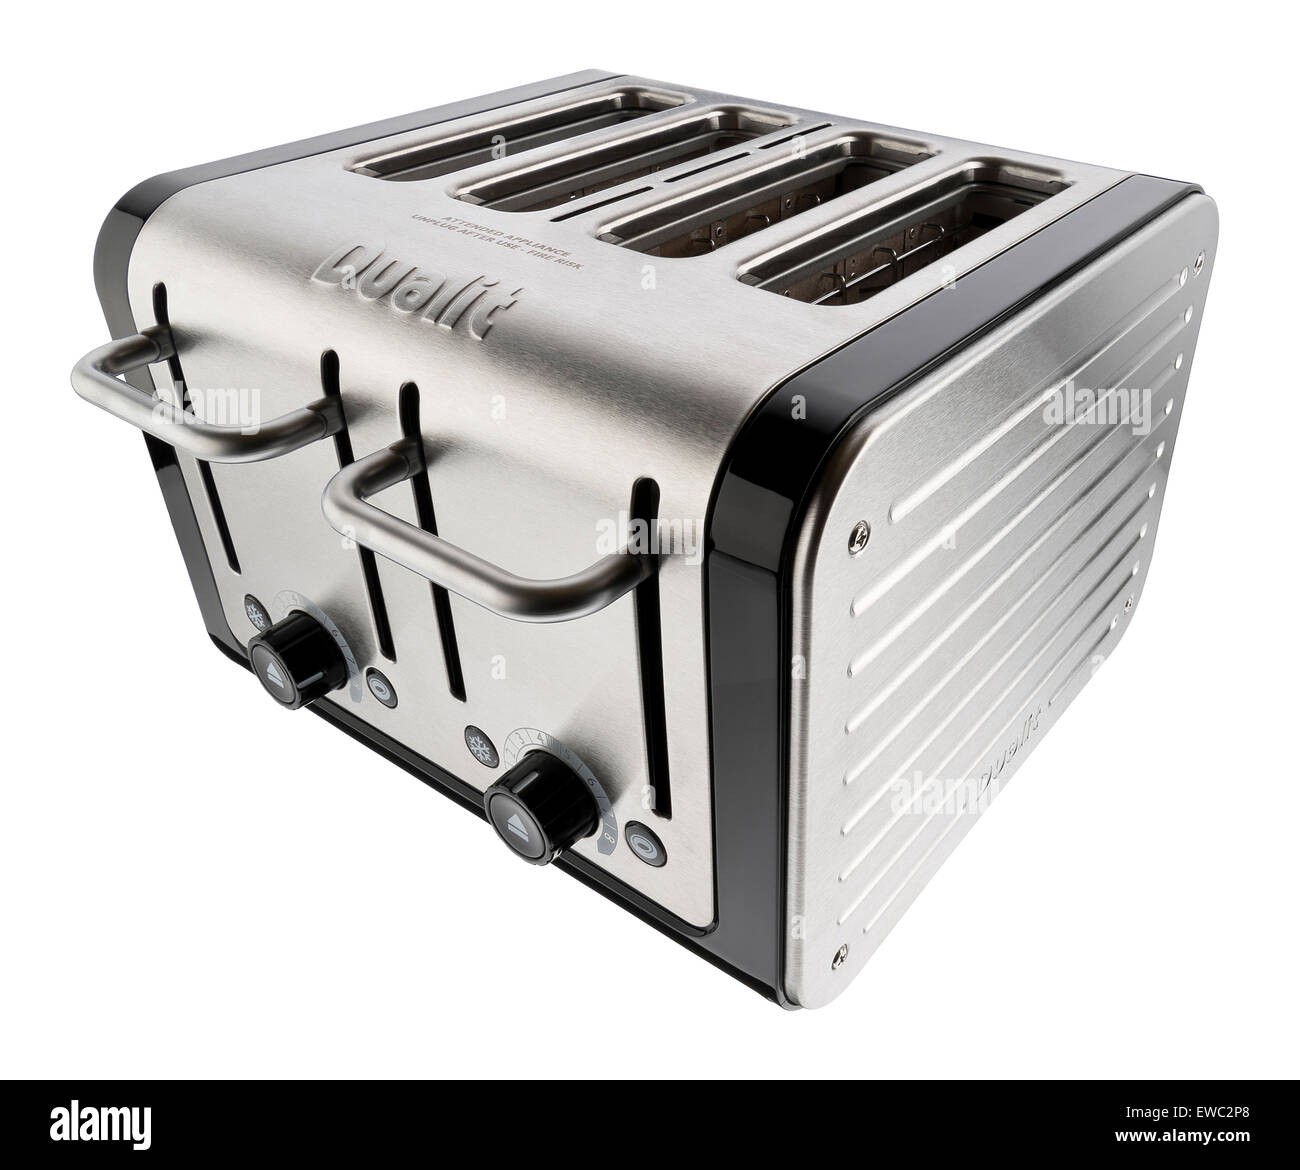 https://c8.alamy.com/comp/EWC2P8/dualit-4-slice-toaster-in-brushed-aluminum-design-EWC2P8.jpg